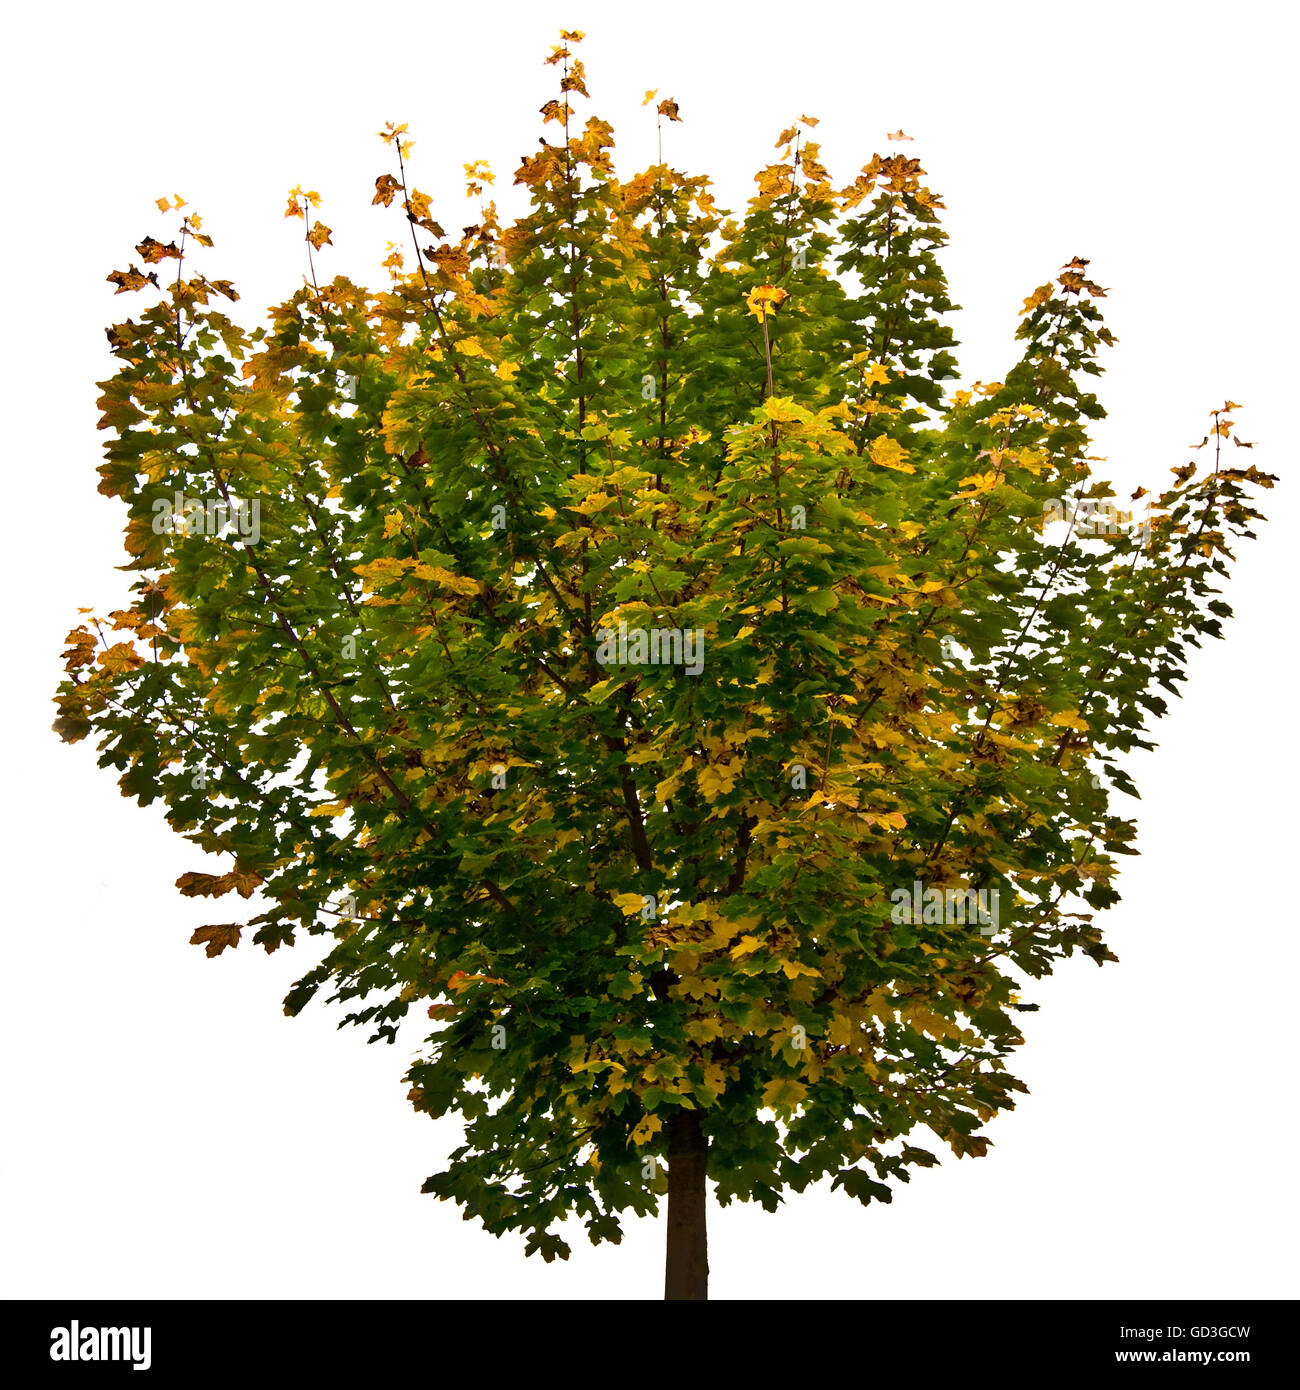 Maple tree (Acer) Stock Photo